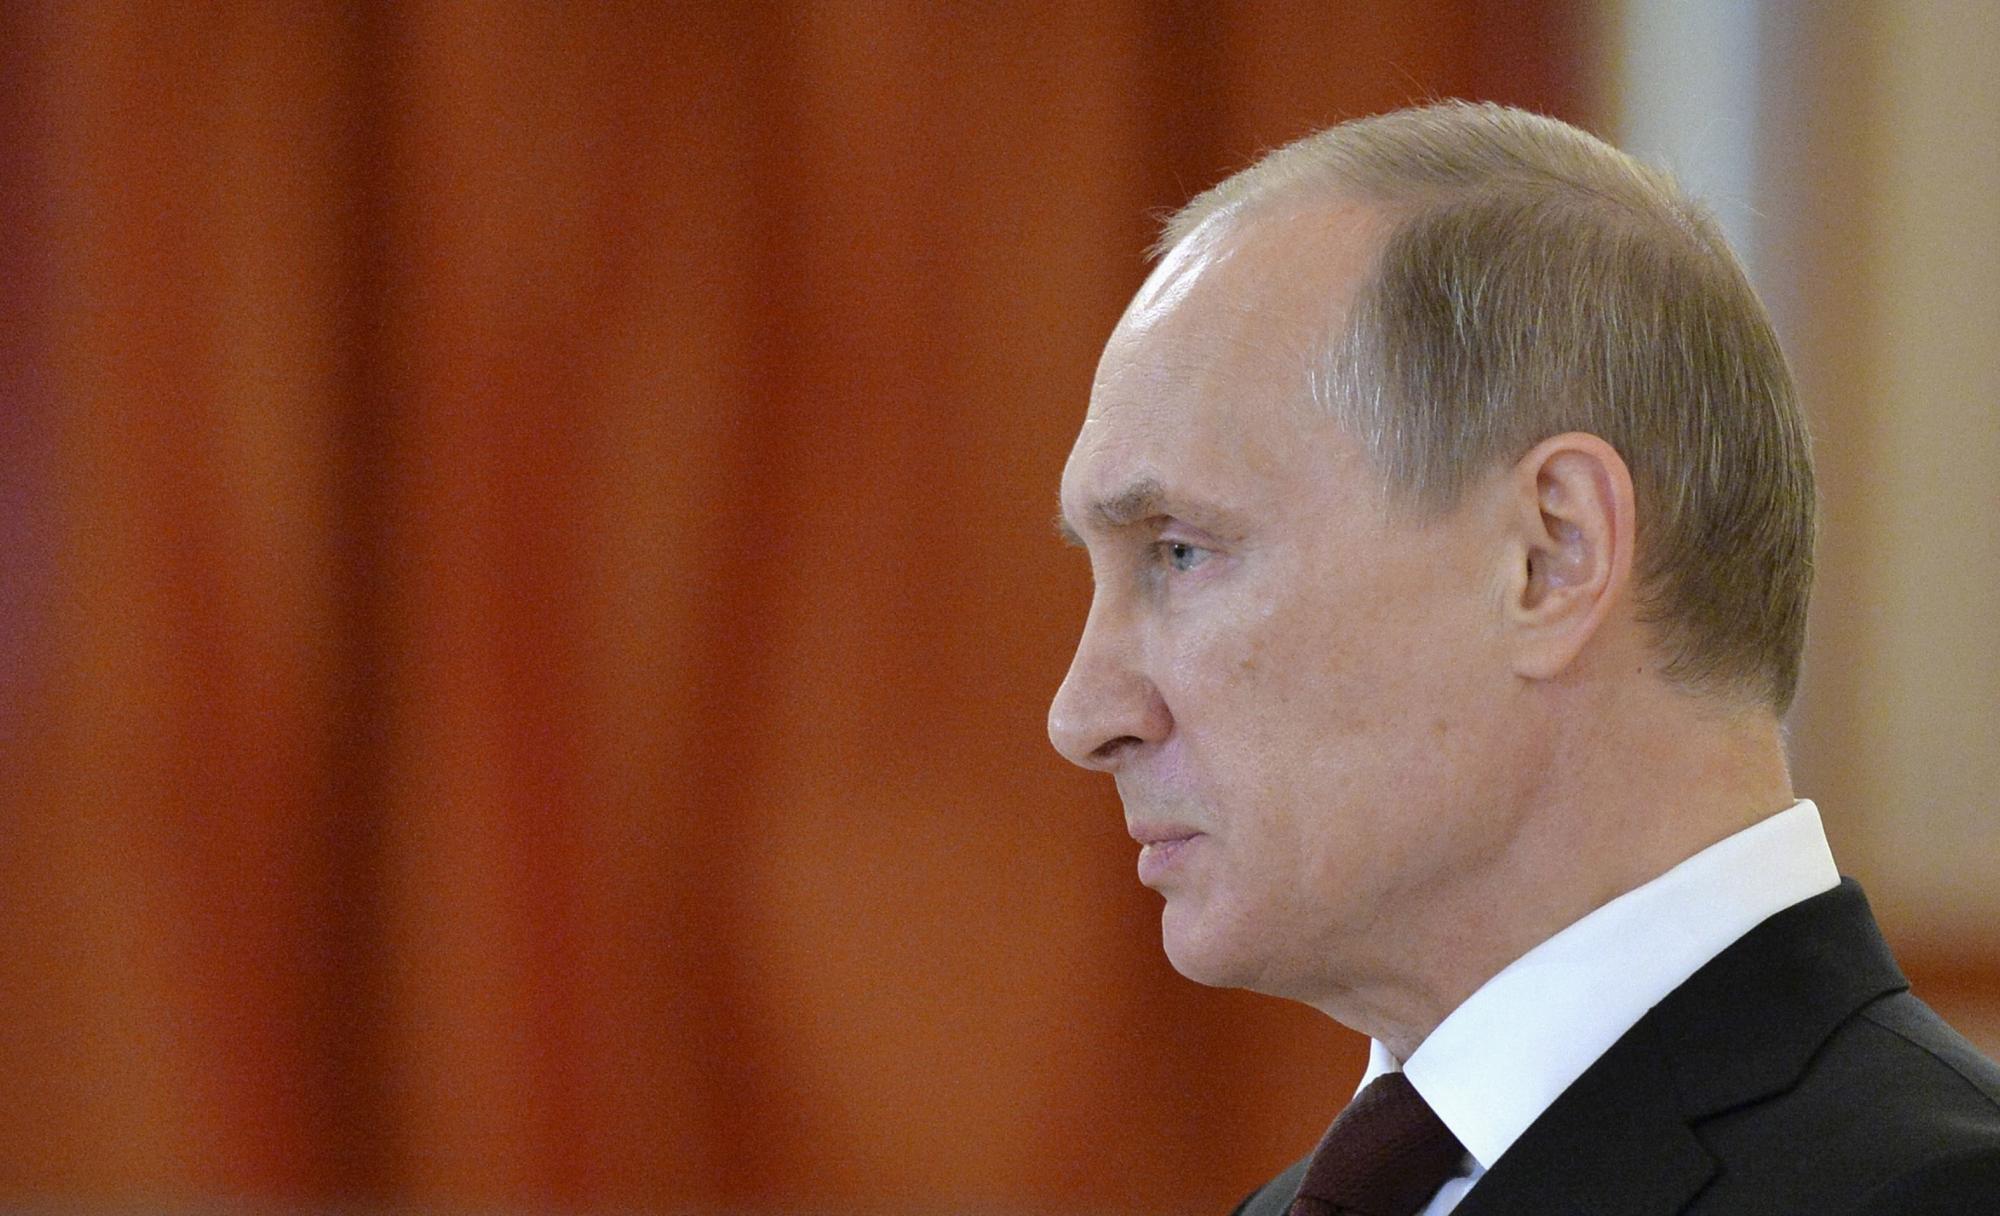 "Більшість рішень приймає особисто Путін": експерт про російський режим